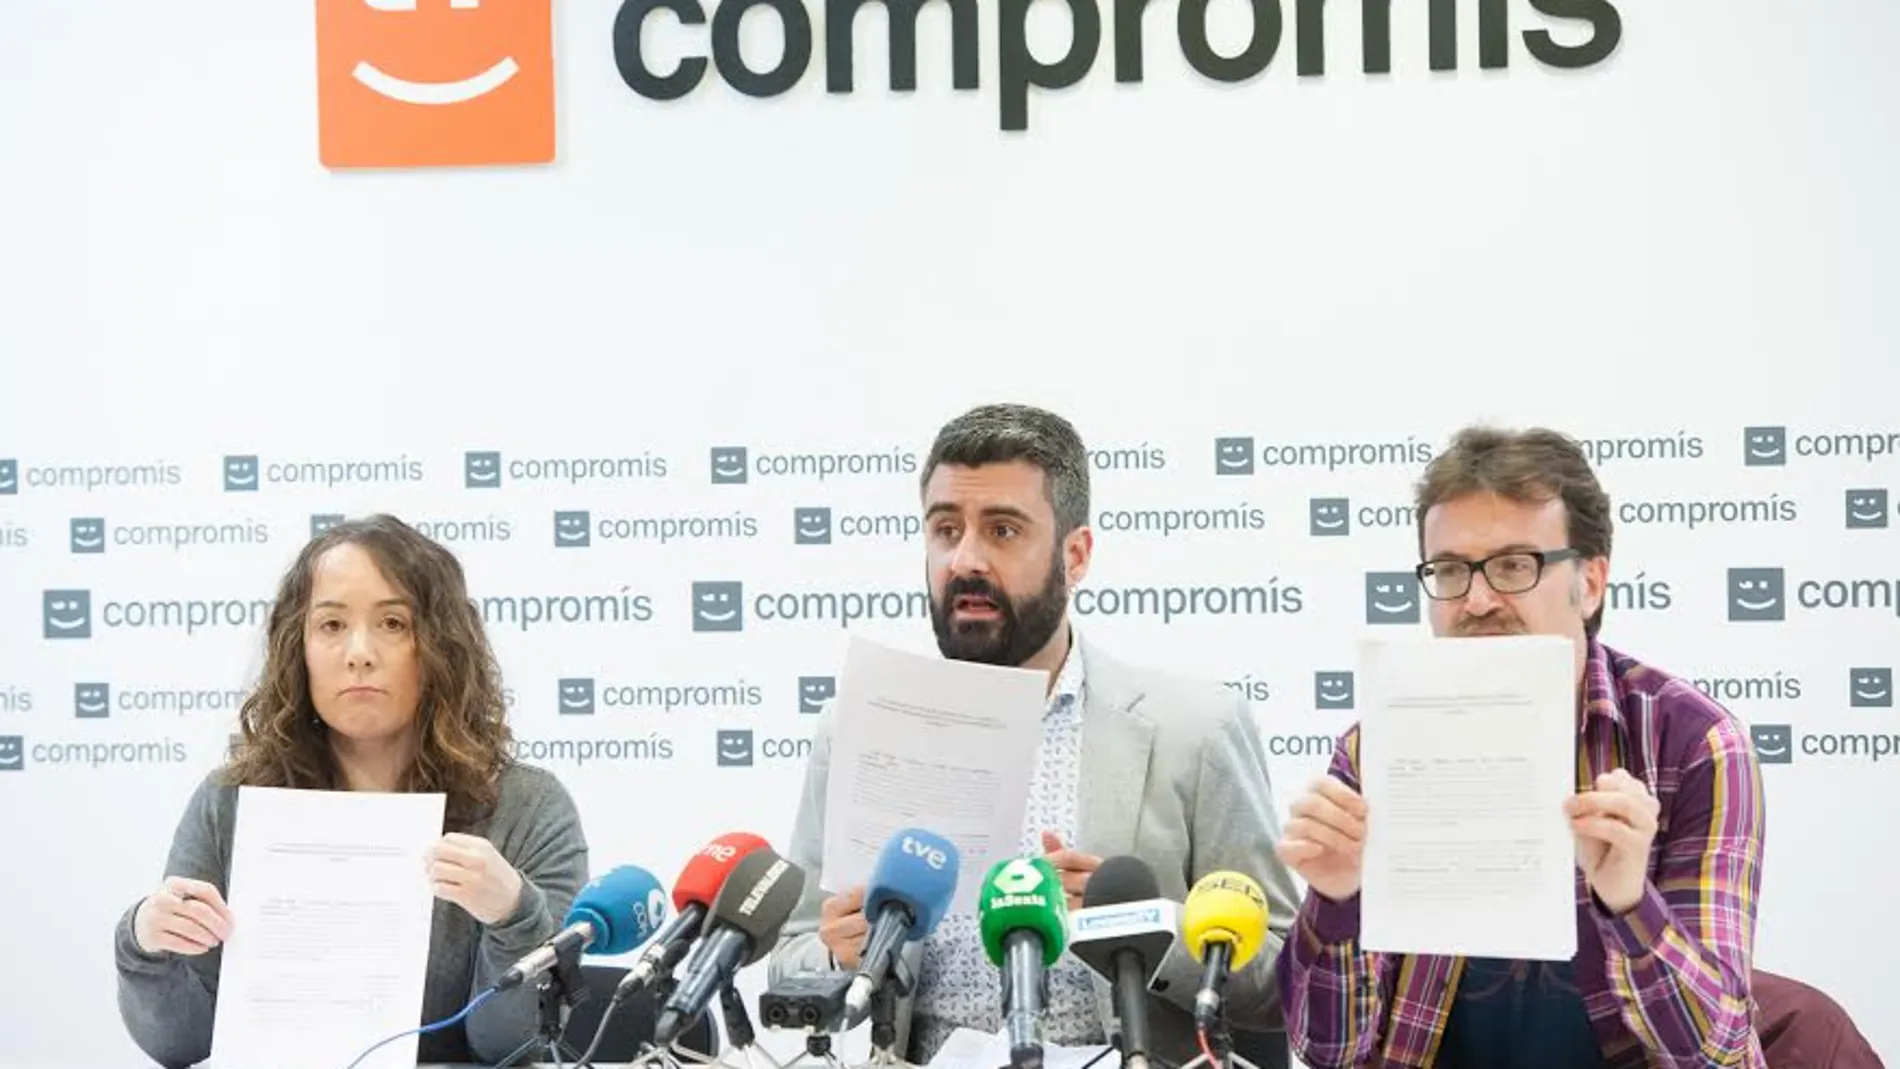 Pere Fuset, Gloria Tello y Giuseppe Grezzi el día que presentaron mediáticamente su denuncia contra el PP basada en «lo aparecido en los medios de comunicación»